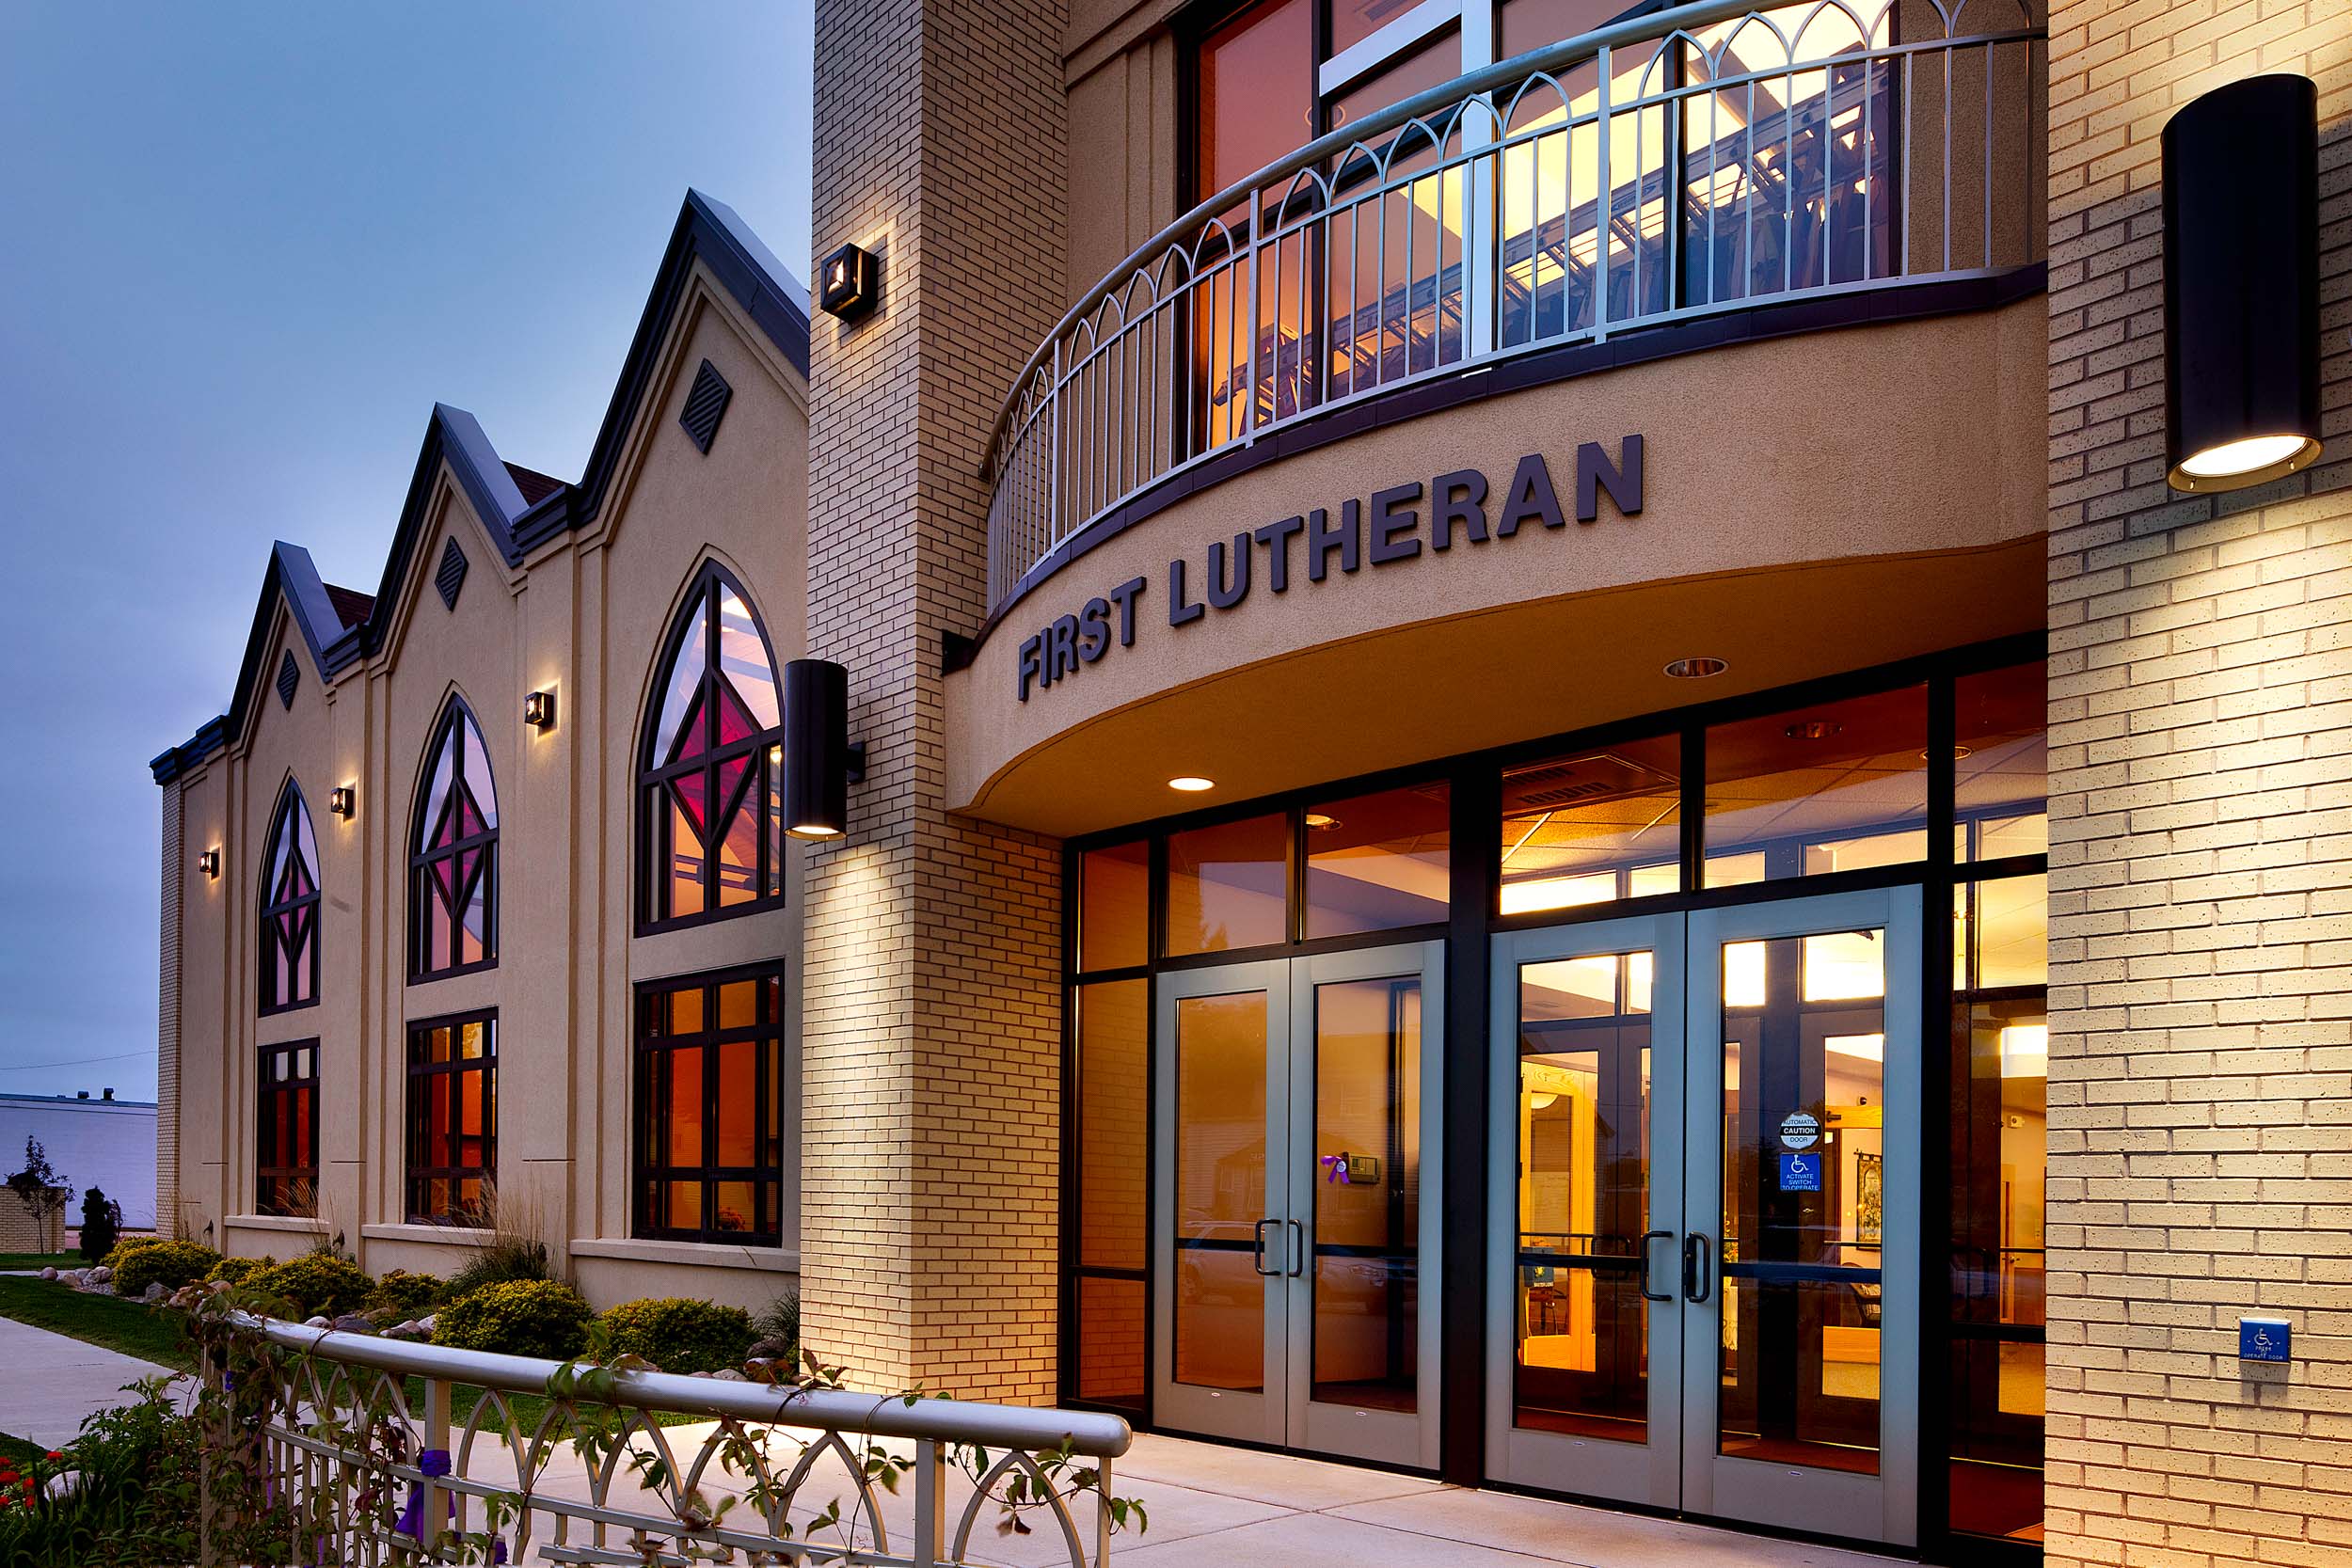 First Lutheran Church.  Brainerd, Minnesota.